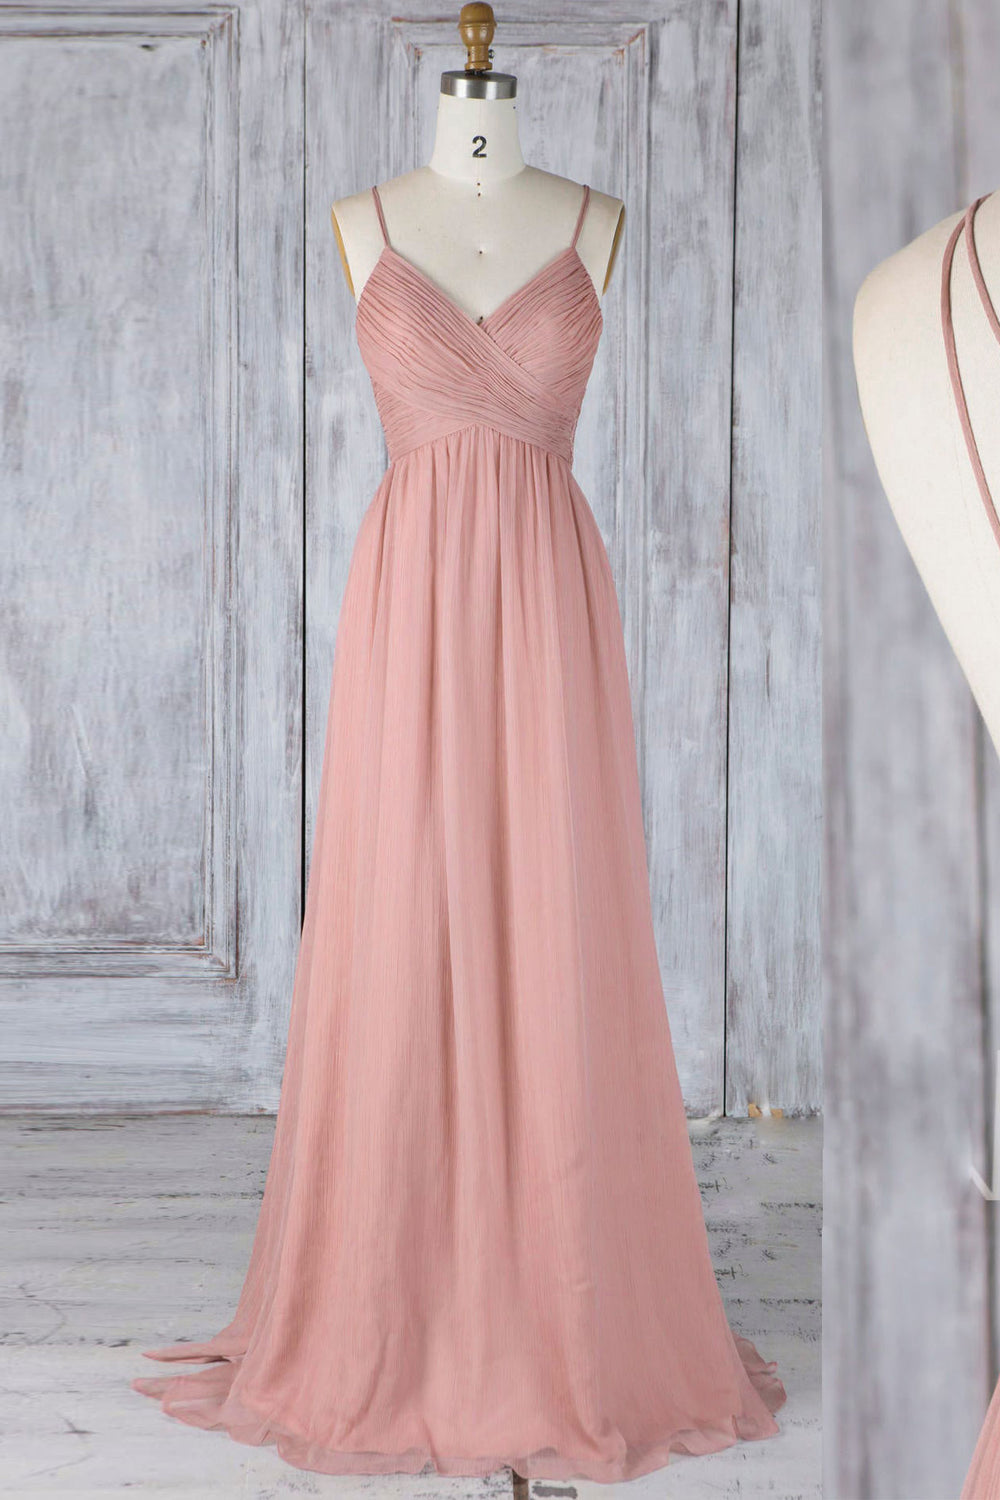 Pink chiffon lace long prom dress pink lace bridesmaid dress